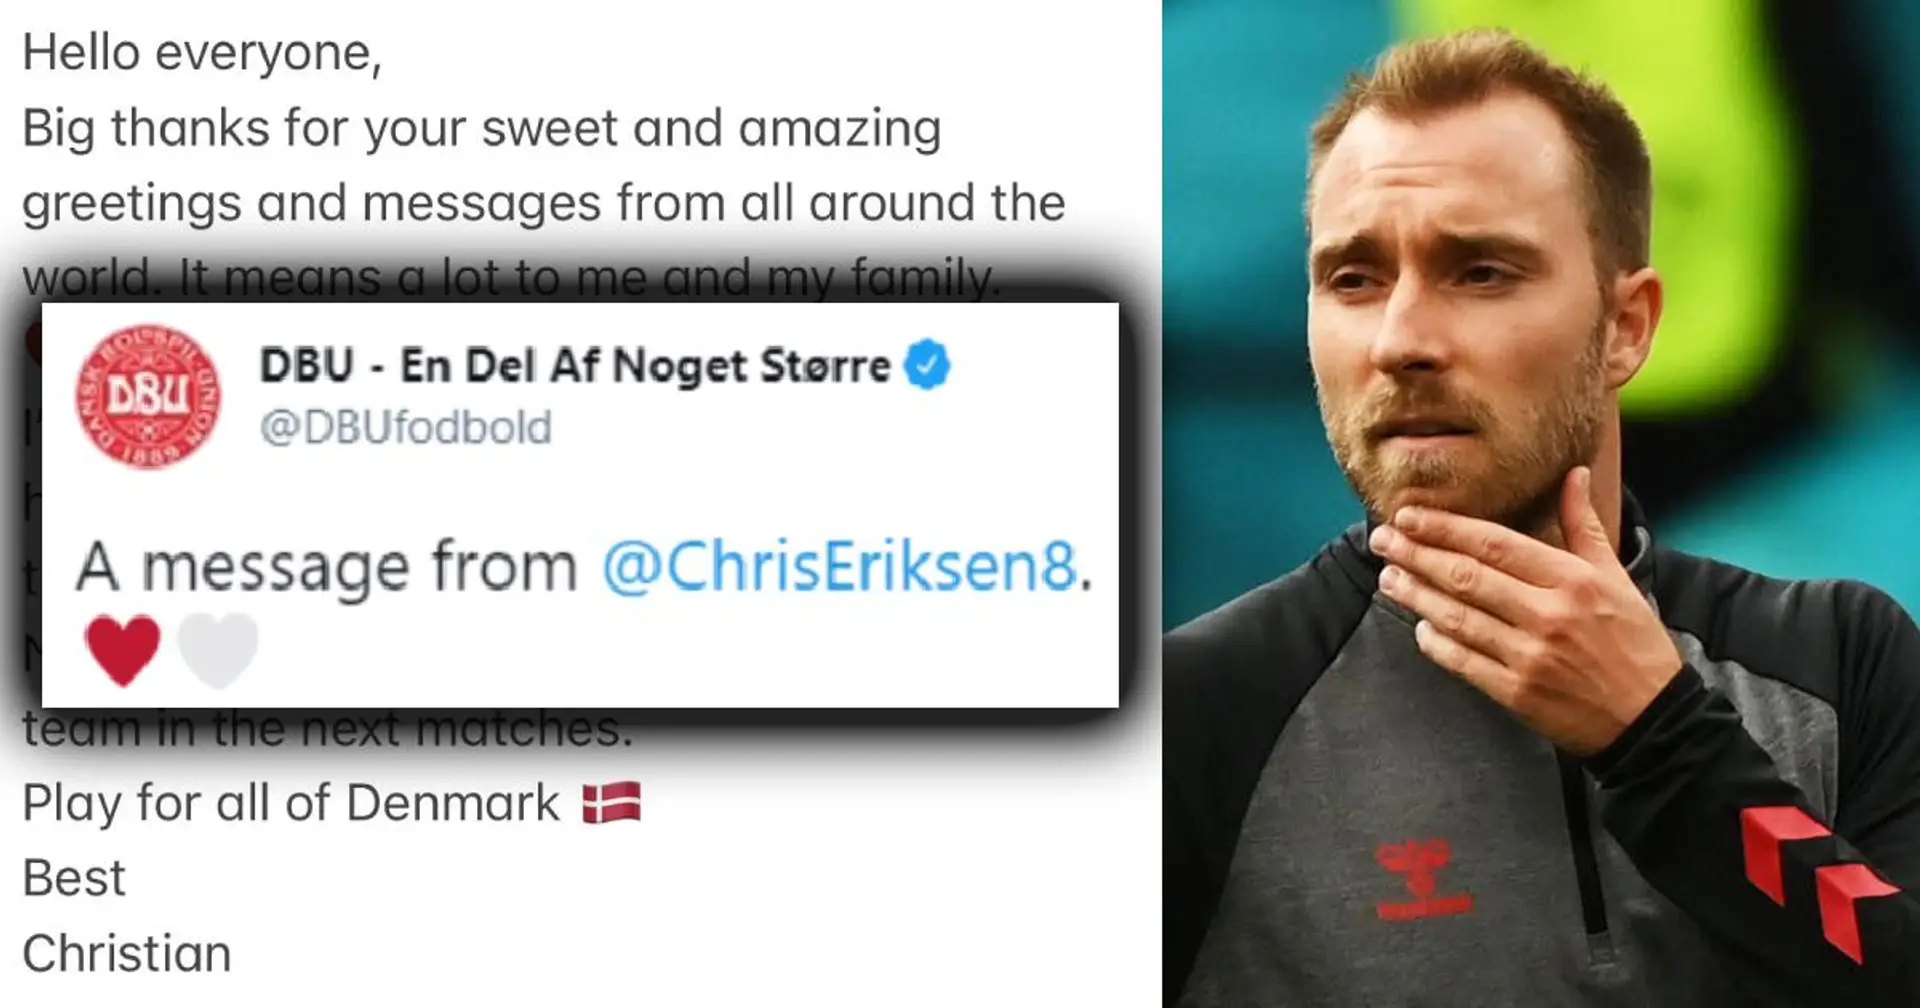 Christian Eriksen postet sein erstes Bild und eine Nachricht nach seinem Kollaps auf dem Platz